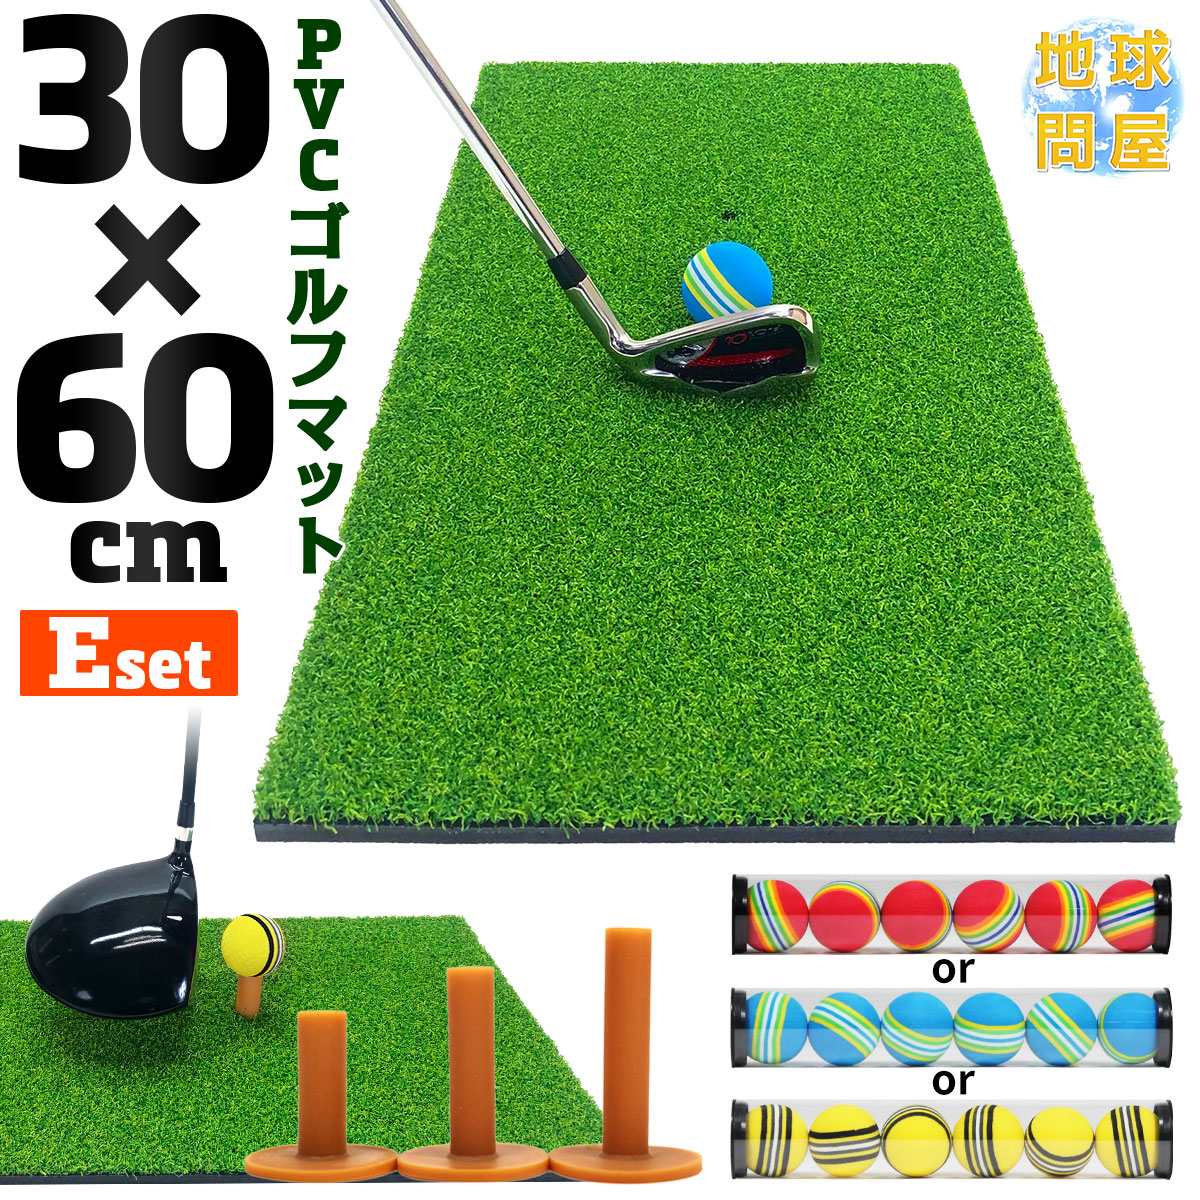 ゴルフマット プロ仕様 30×60cm ゴルフ 練習 マット 素振り スイング ドライバー アイアン 室内 屋外 高密度 人工芝 PVC ゴルフティー ゴルフボール Eセット